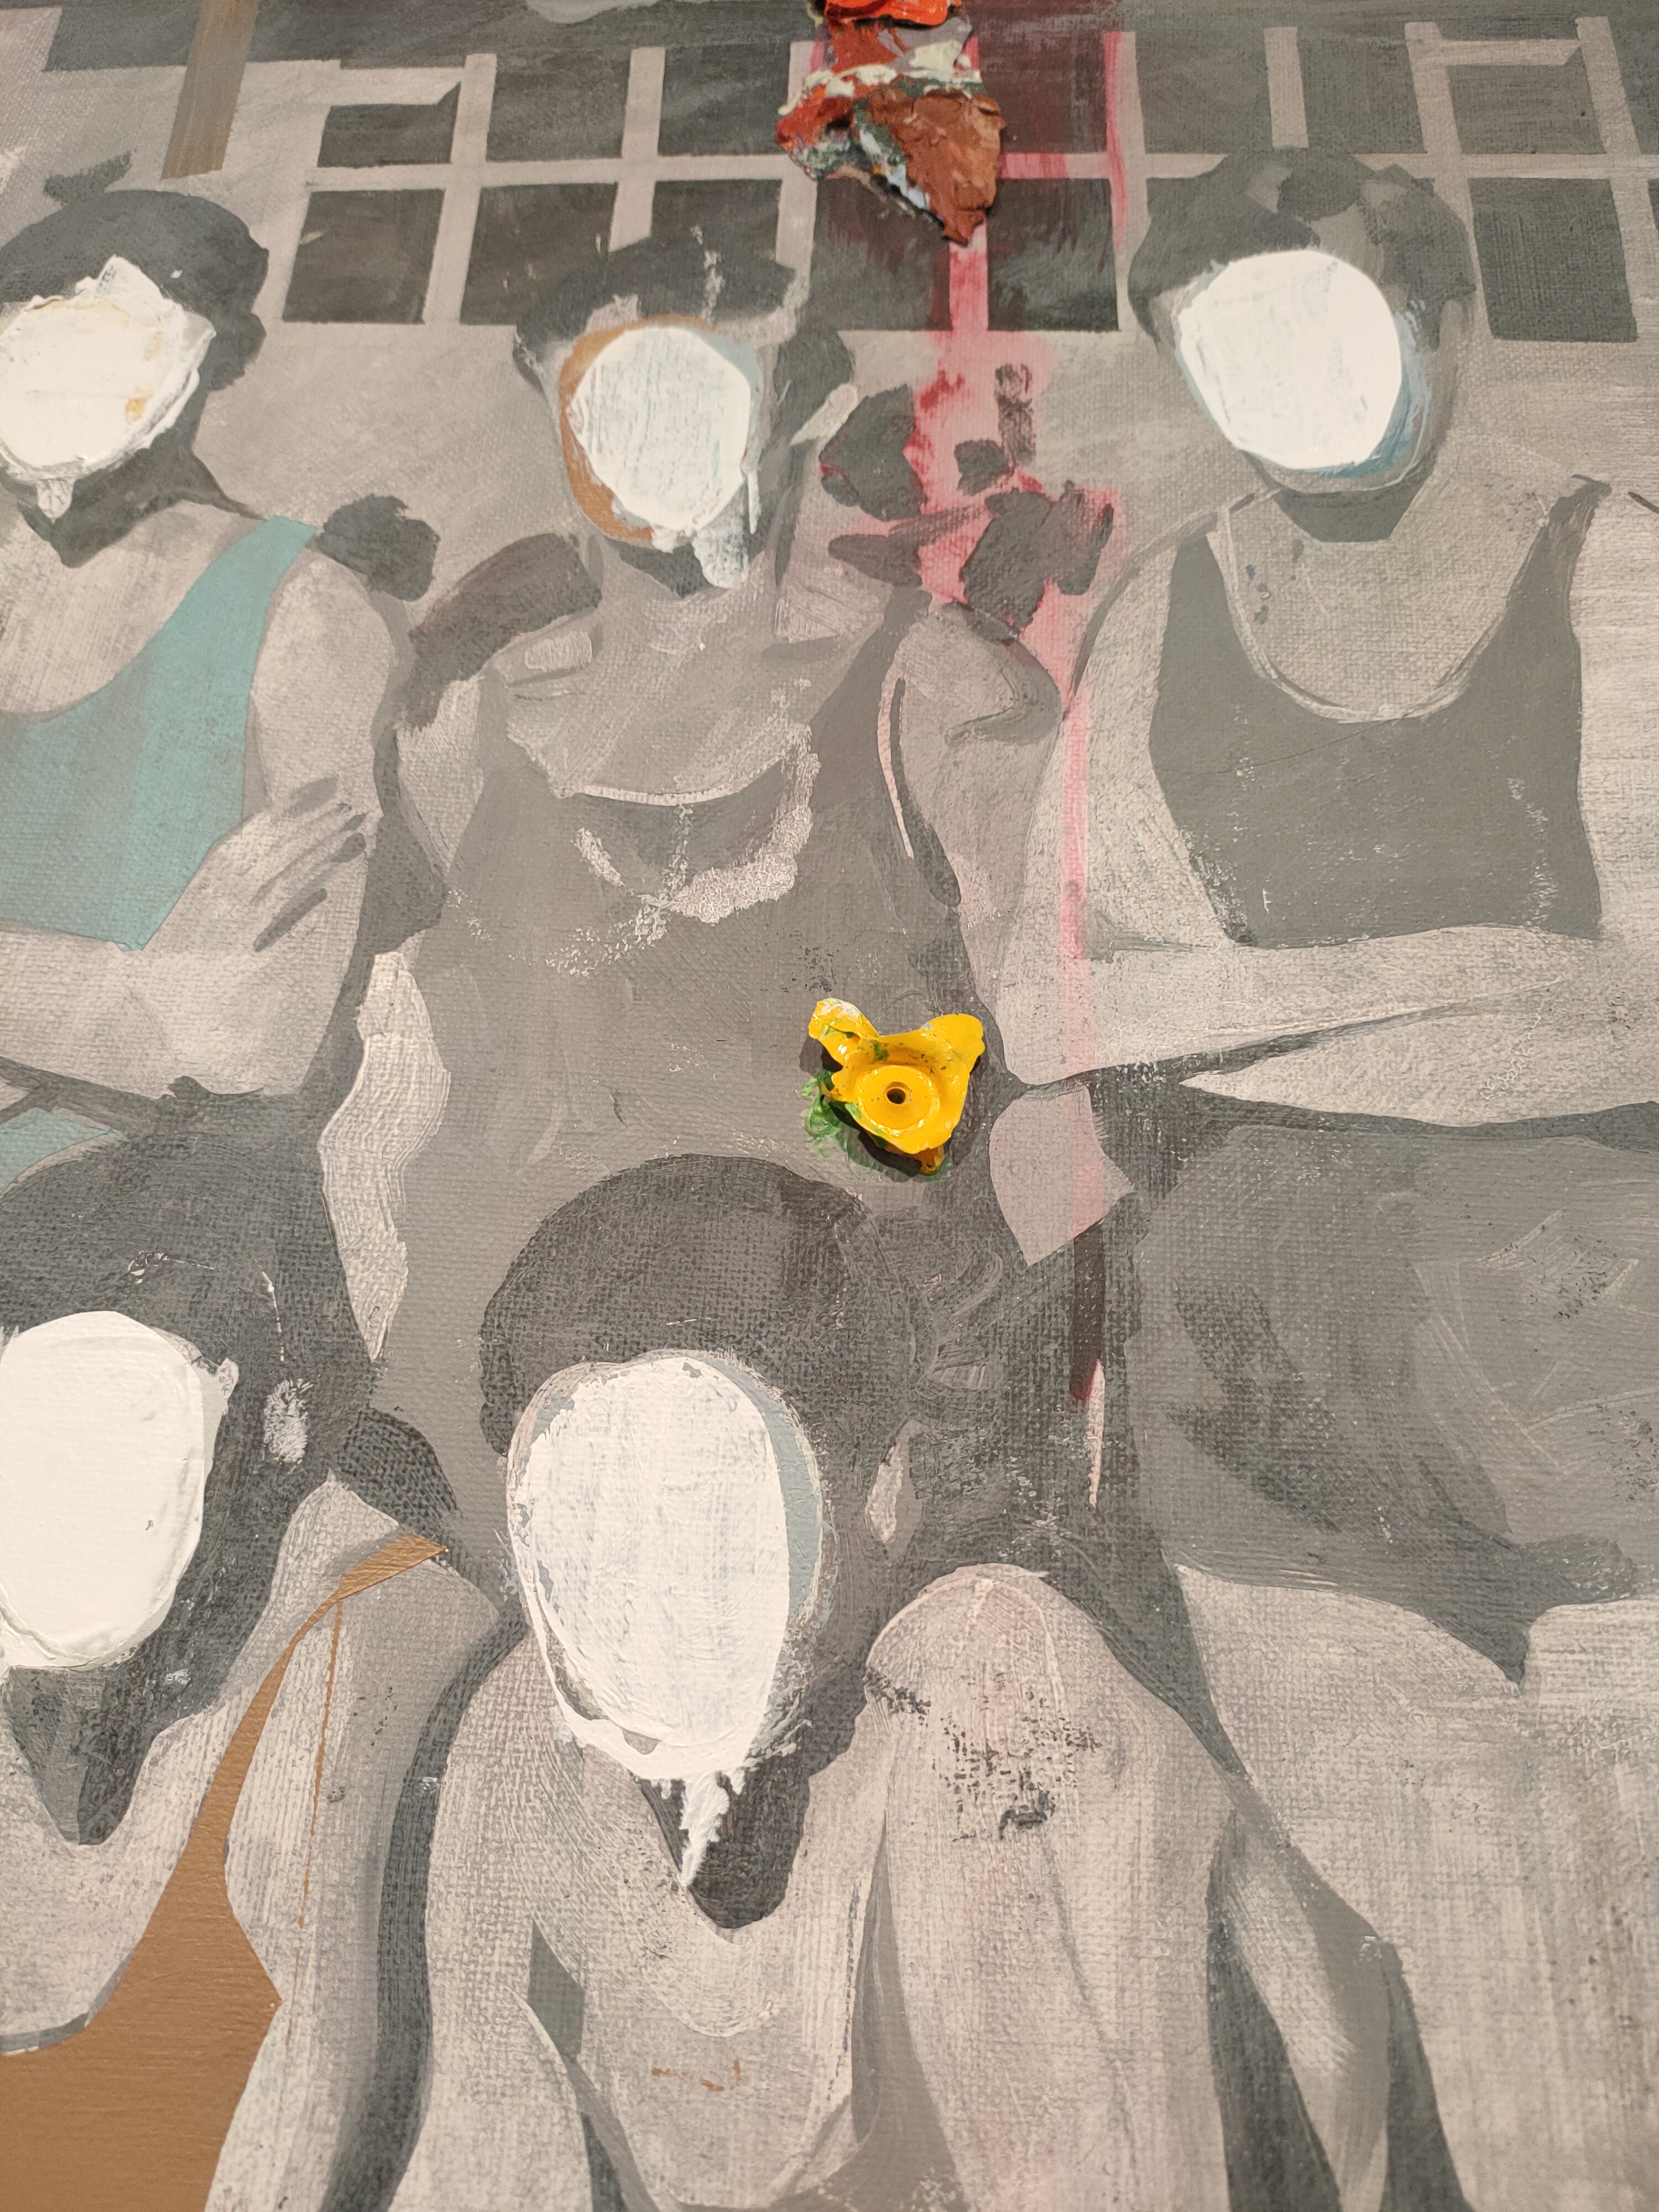 Detalle cercano de pintura de ALbacete. Retratro de grupo en el que las personas tienen la cara pintada de blanco.Sobre ellas un pegote de oleo.